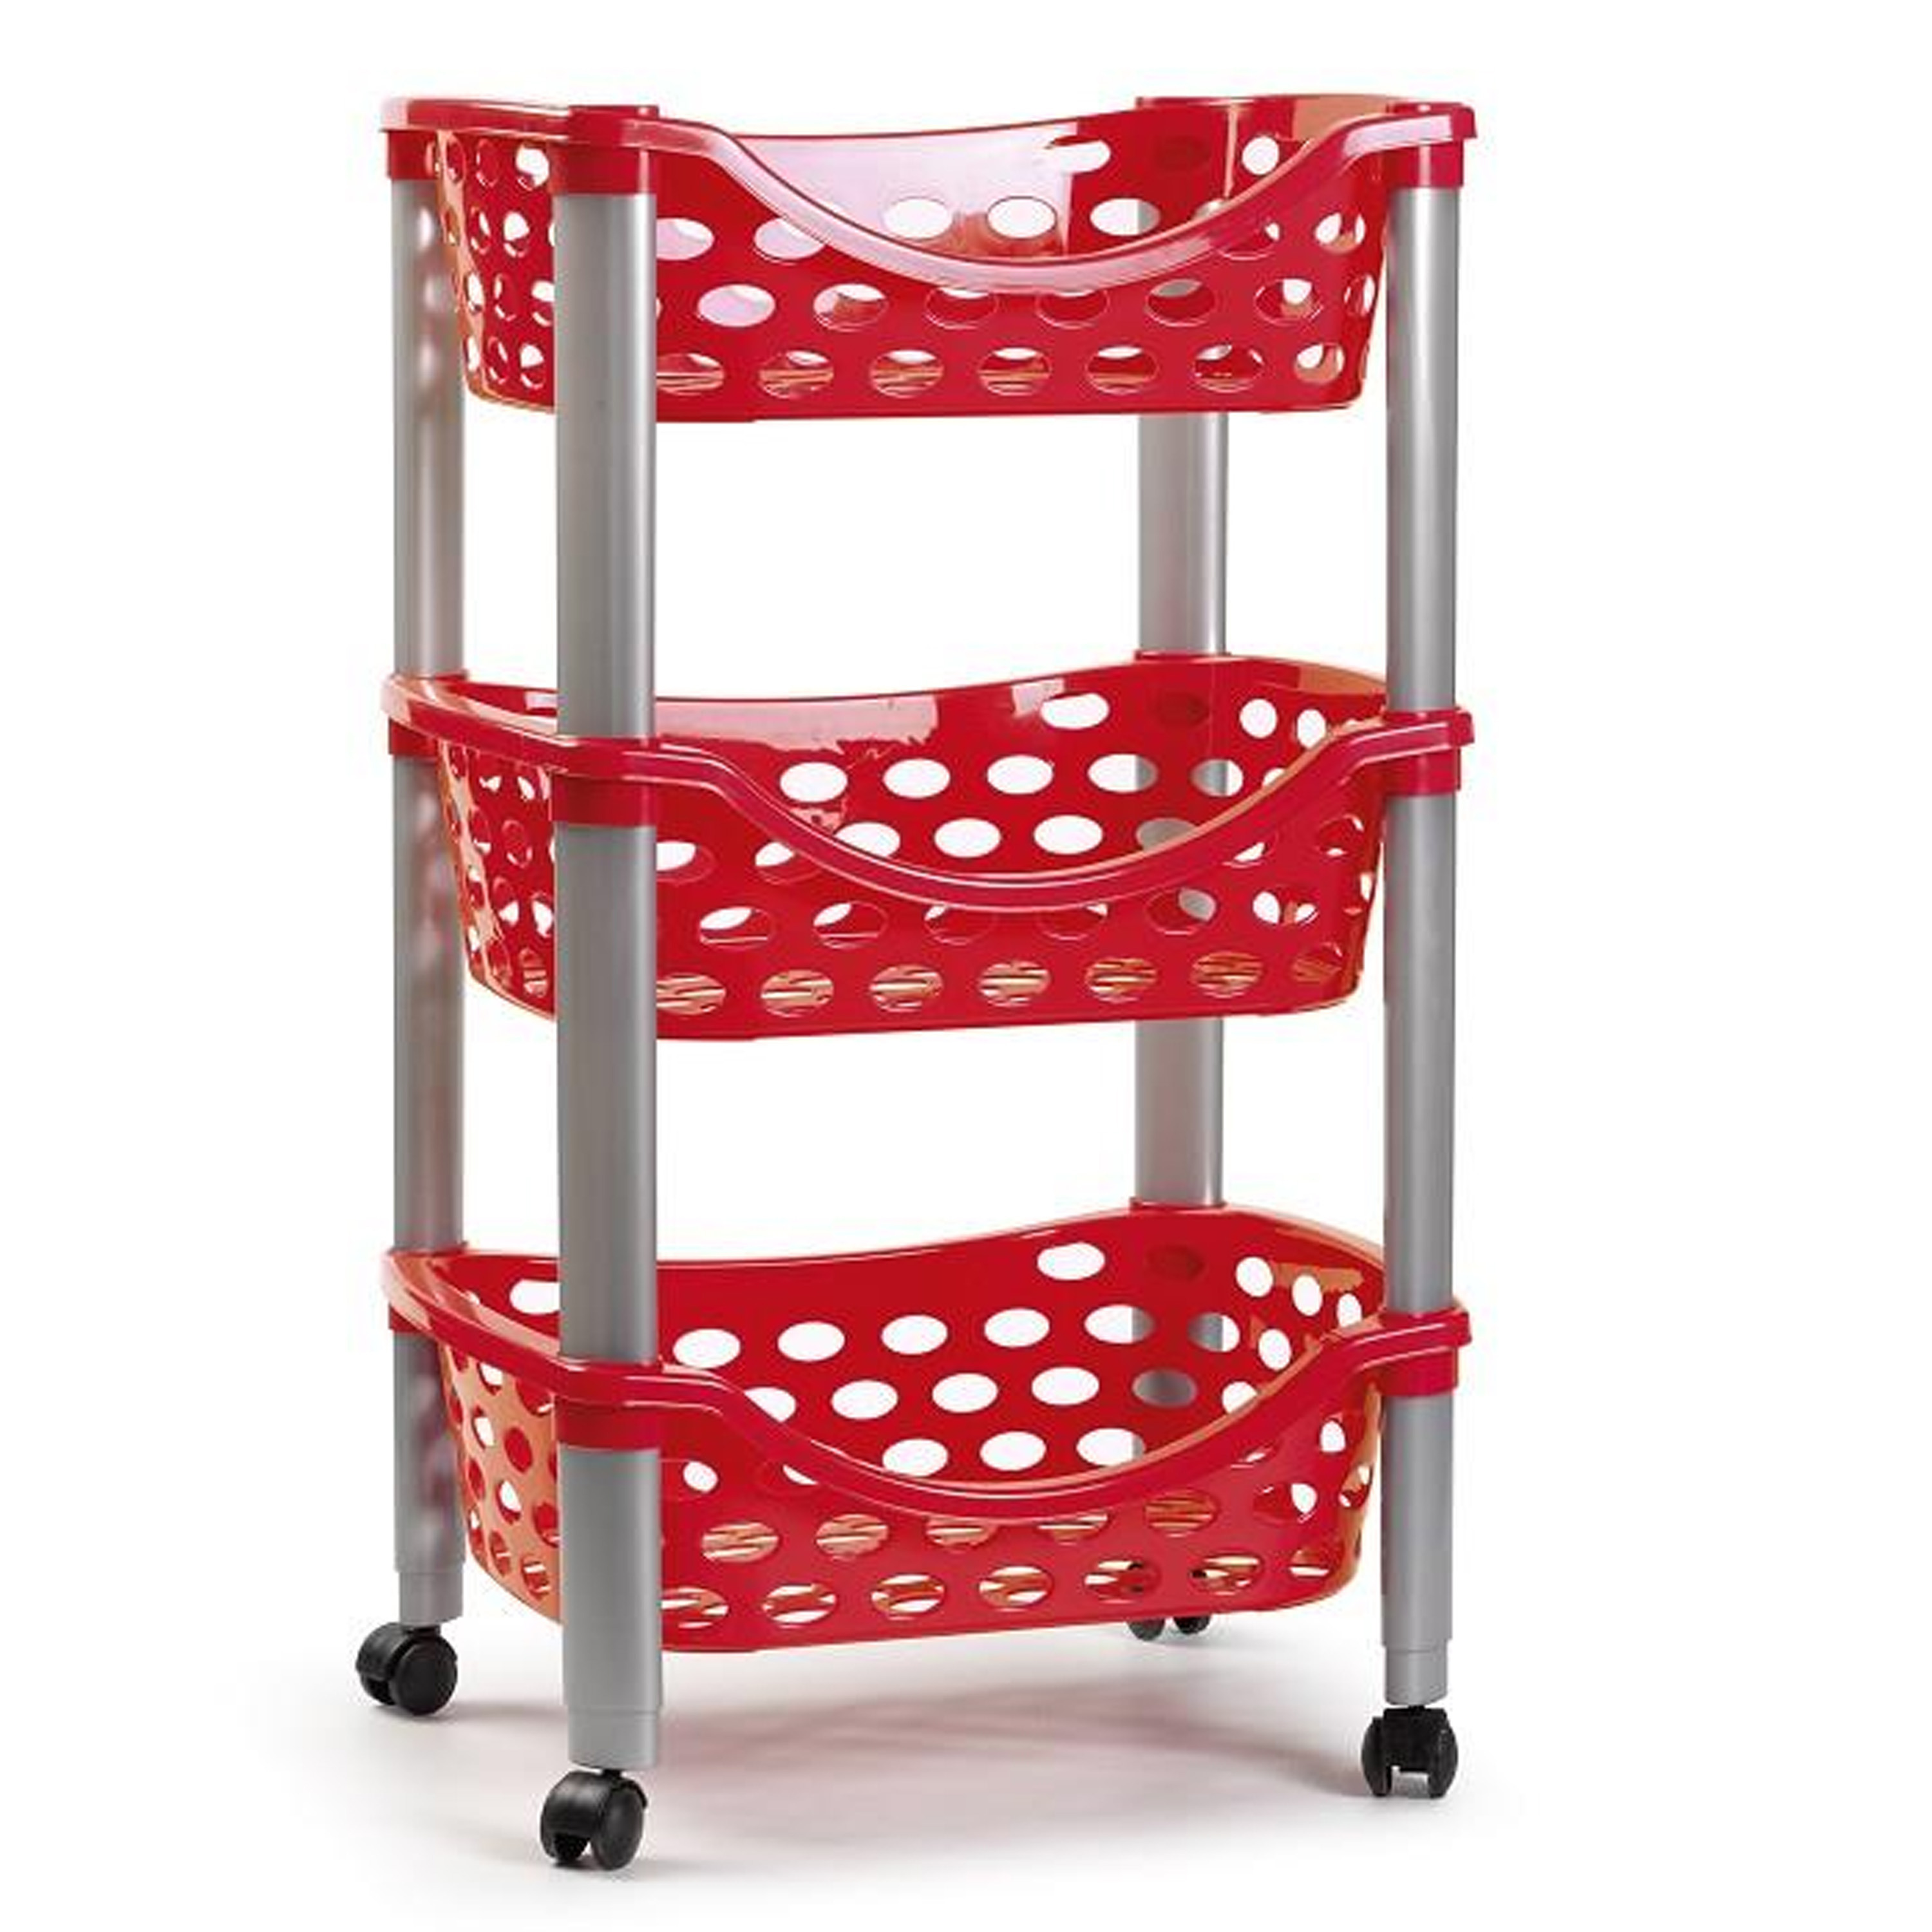 Keukentrolley/roltafel 3 laags kunststof rood 40 65 cm - Badkamer kasten/trolleys - Bellatio warenhuis